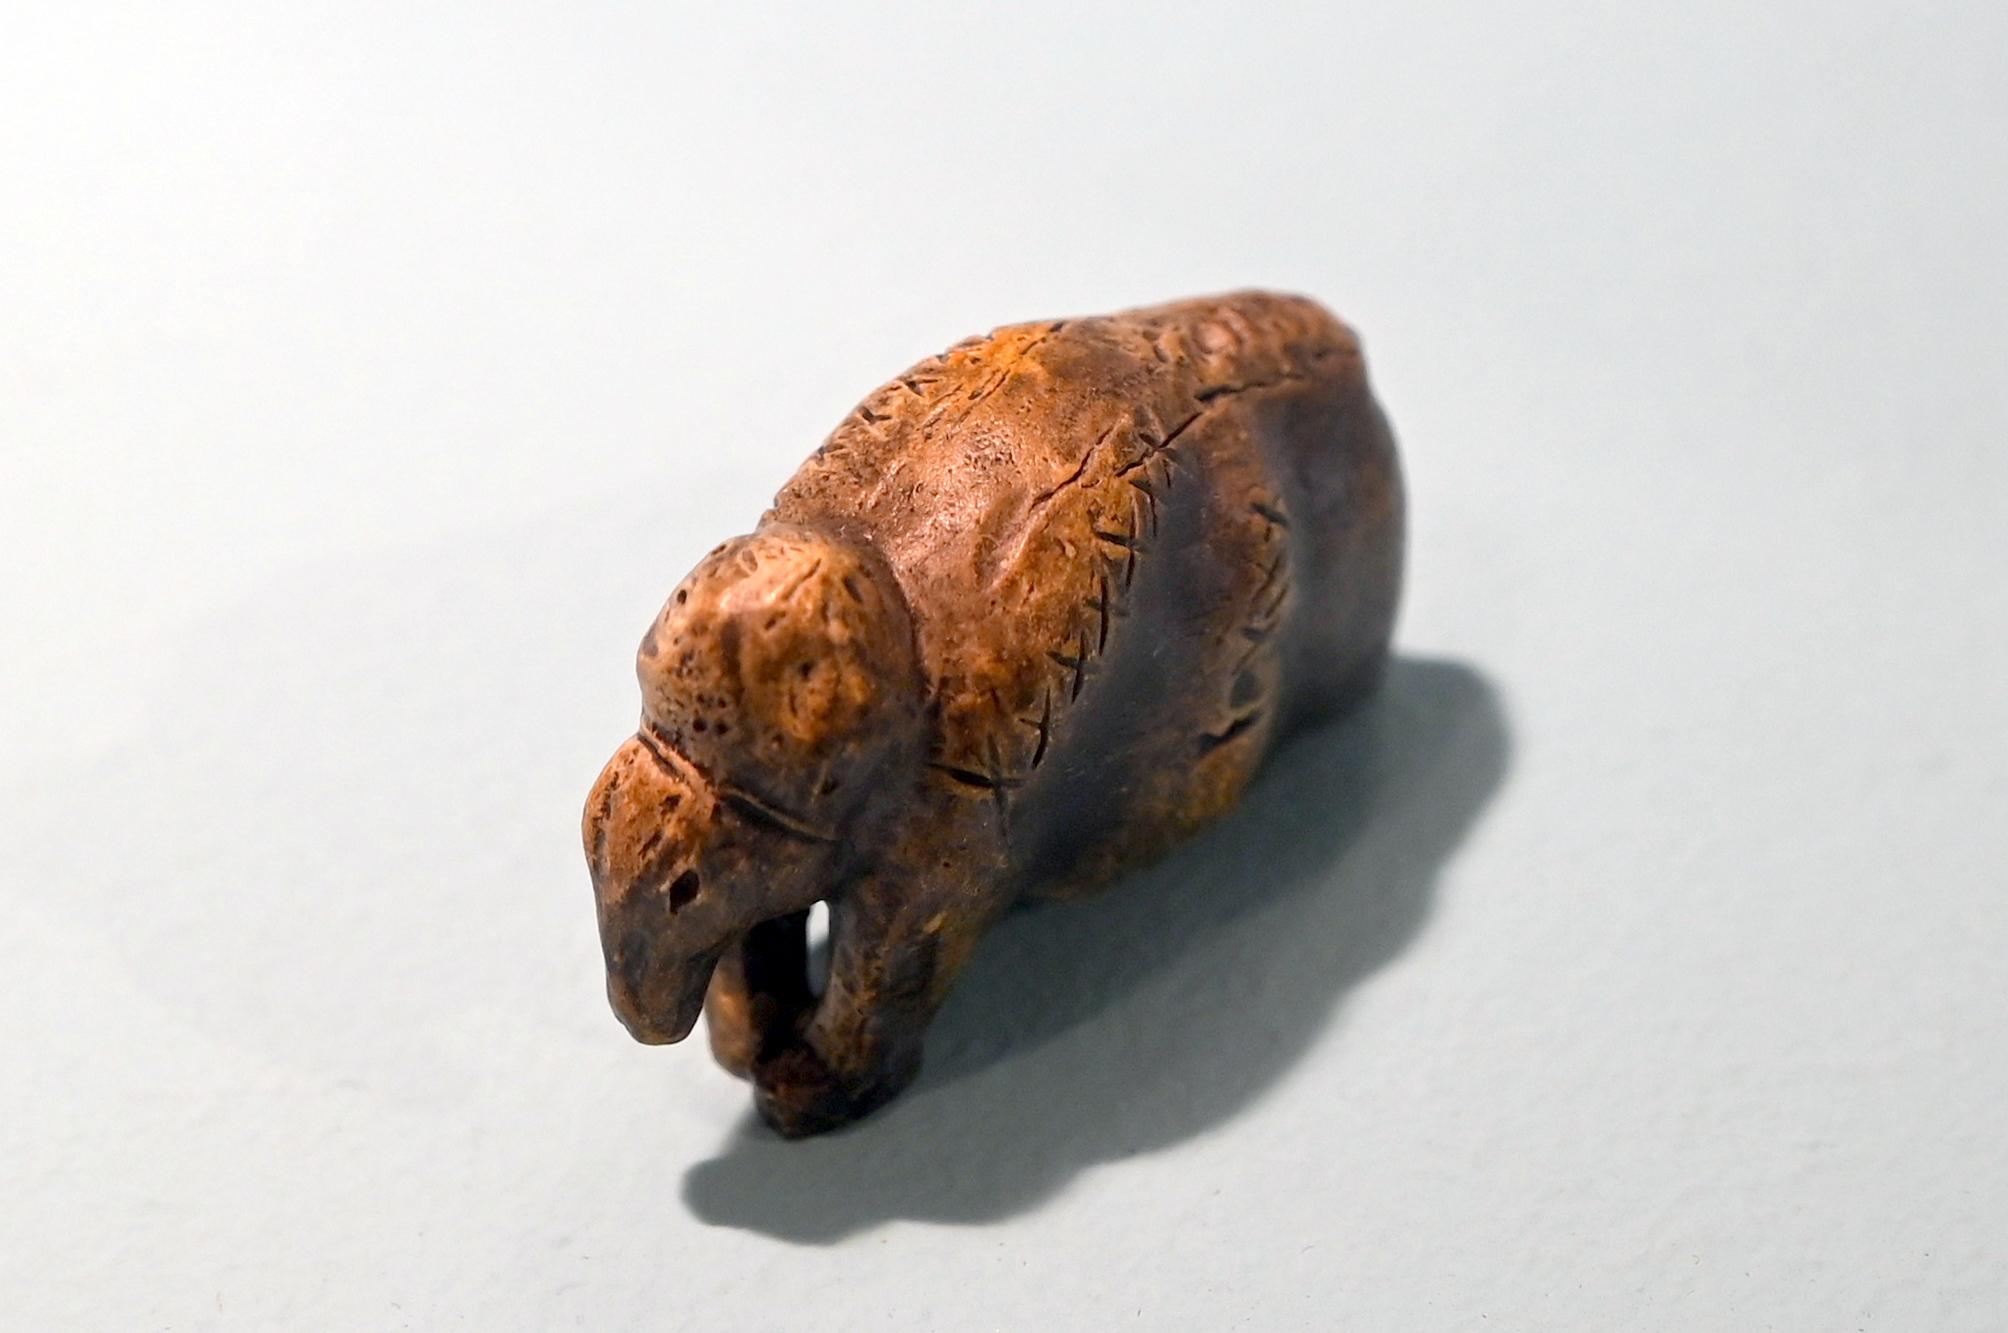 Mammut (Kopie), 33000 v. Chr.